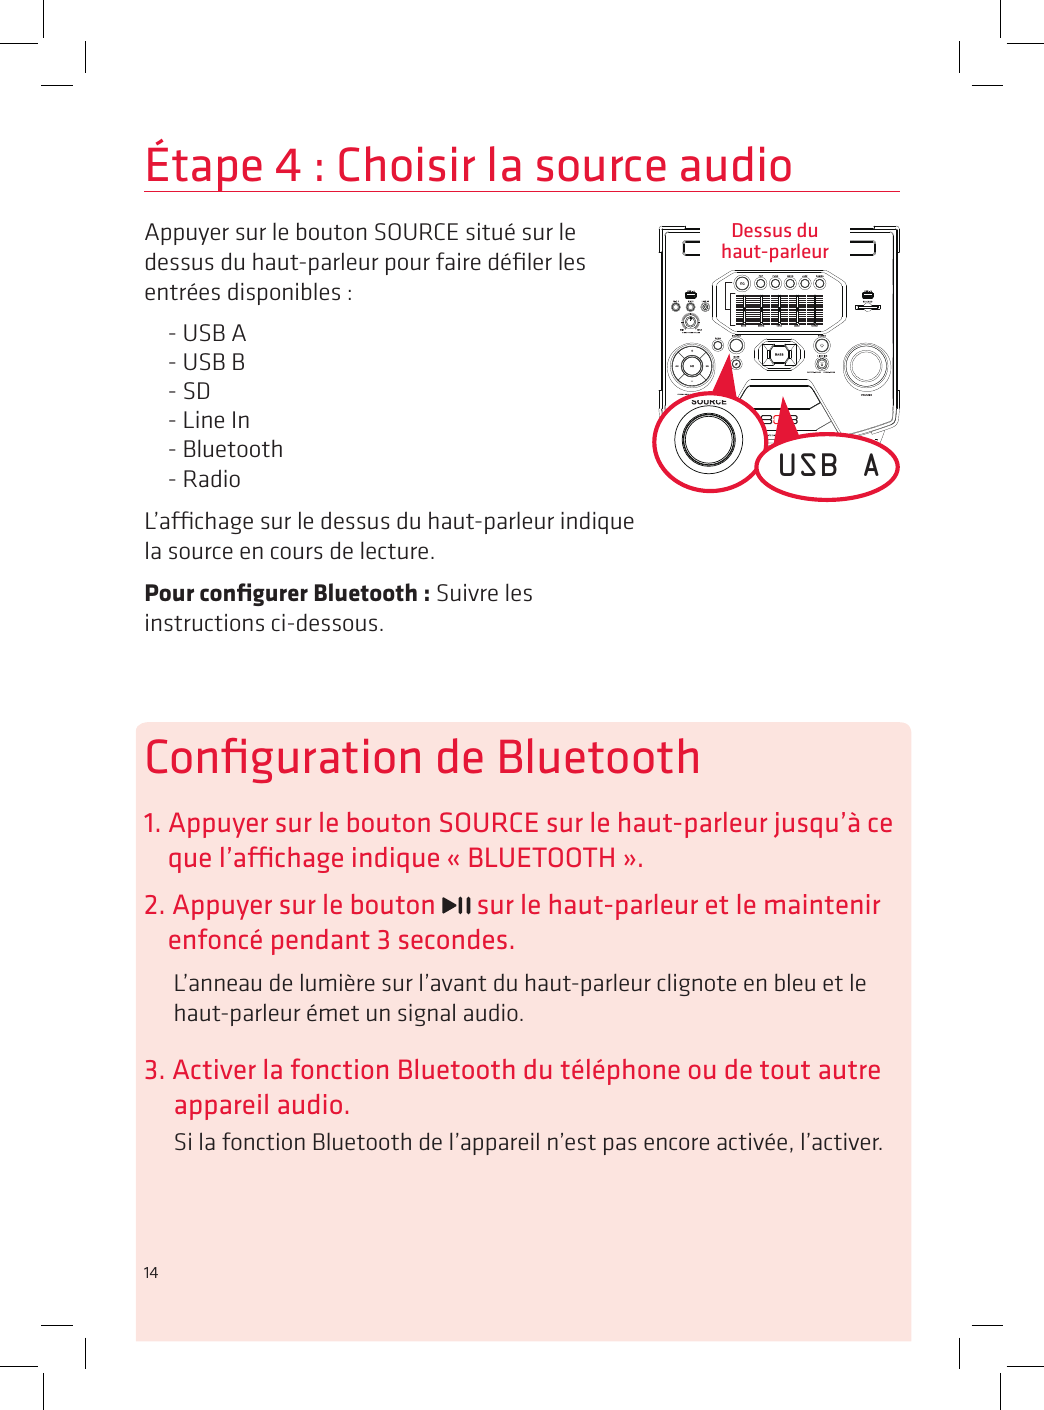 14Étape 4 : Choisir la source audioAppuyer sur le bouton SOURCE situé sur le dessus du haut-parleur pour faire déﬁler les entrées disponibles :- USB A- USB B- SD- Line In- Bluetooth- RadioL’achage sur le dessus du haut-parleur indique la source en cours de lecture. Pour conﬁgurer Bluetooth : Suivre les instructions ci-dessous.USB AConﬁguration de Bluetooth1. Appuyer sur le bouton SOURCE sur le haut-parleur jusqu’à ce que l’achage indique « BLUETOOTH ».2. Appuyer sur le bouton   sur le haut-parleur et le maintenir enfoncé pendant 3 secondes.L’anneau de lumière sur l’avant du haut-parleur clignote en bleu et le haut-parleur émet un signal audio.3. Activer la fonction Bluetooth du téléphone ou de tout autre appareil audio.Si la fonction Bluetooth de l’appareil n’est pas encore activée, l’activer.Dessus du  haut-parleur14